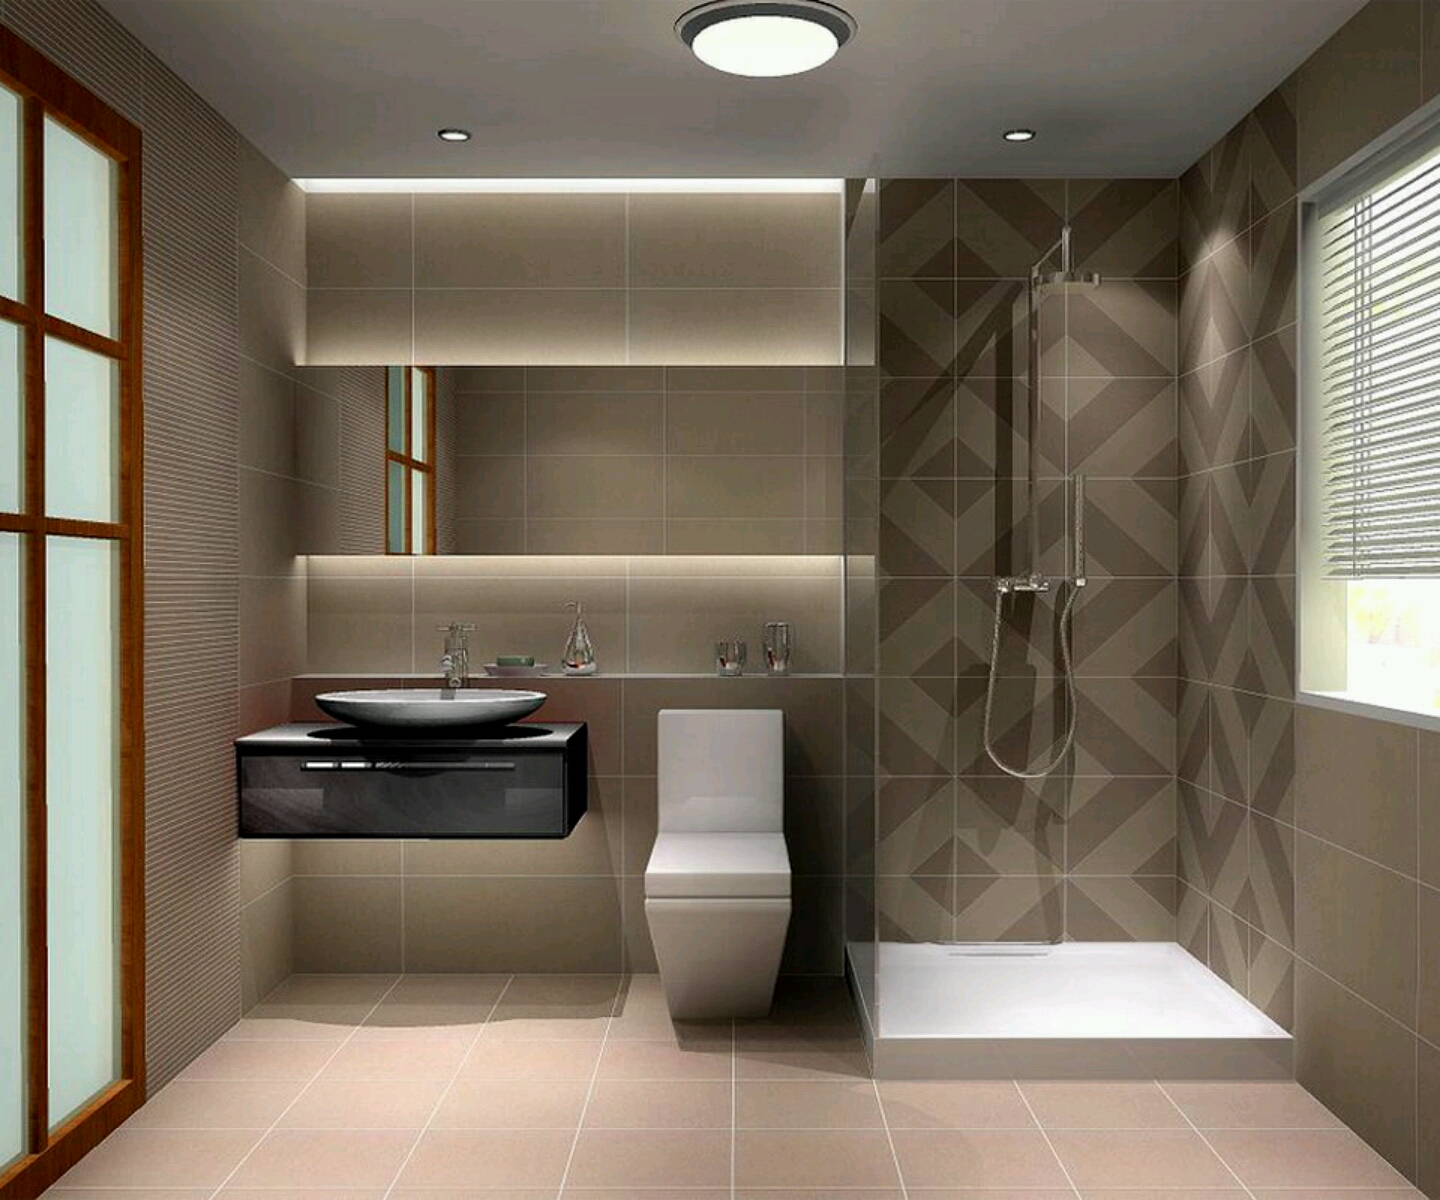 تصاميم حمامات ديكورات حمام 2020 احساس ناعم